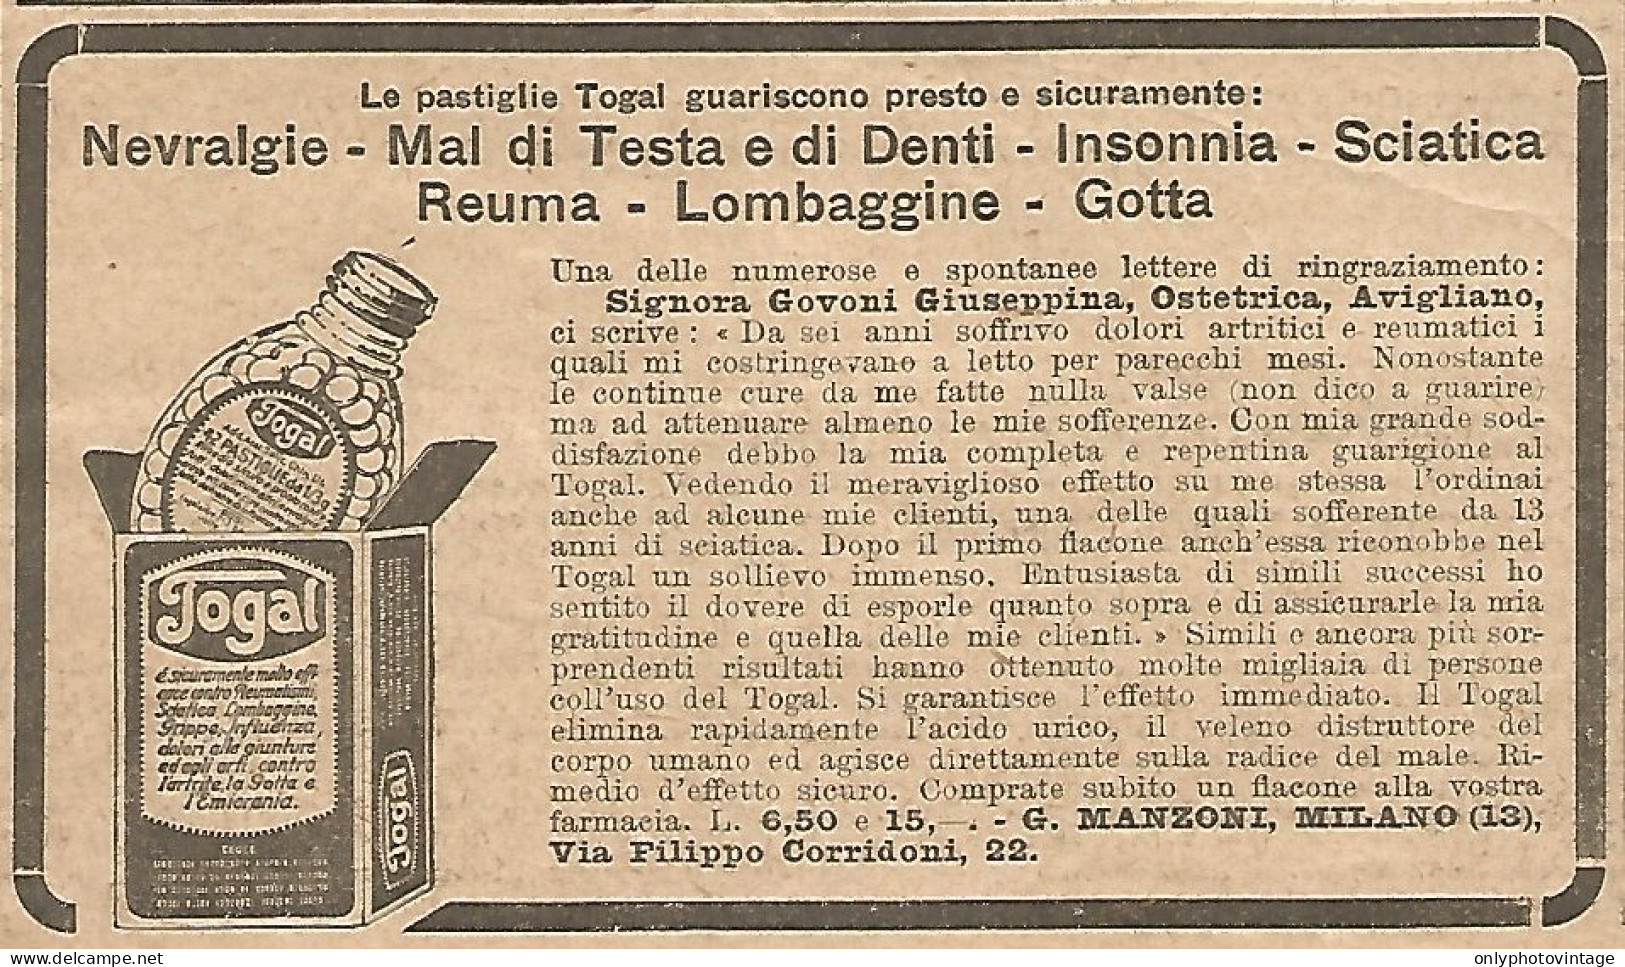 W1695 Pastiglie TOGAL Per Mal Di Denti - Pubblicità Del 1926 - Old Advertising - Advertising